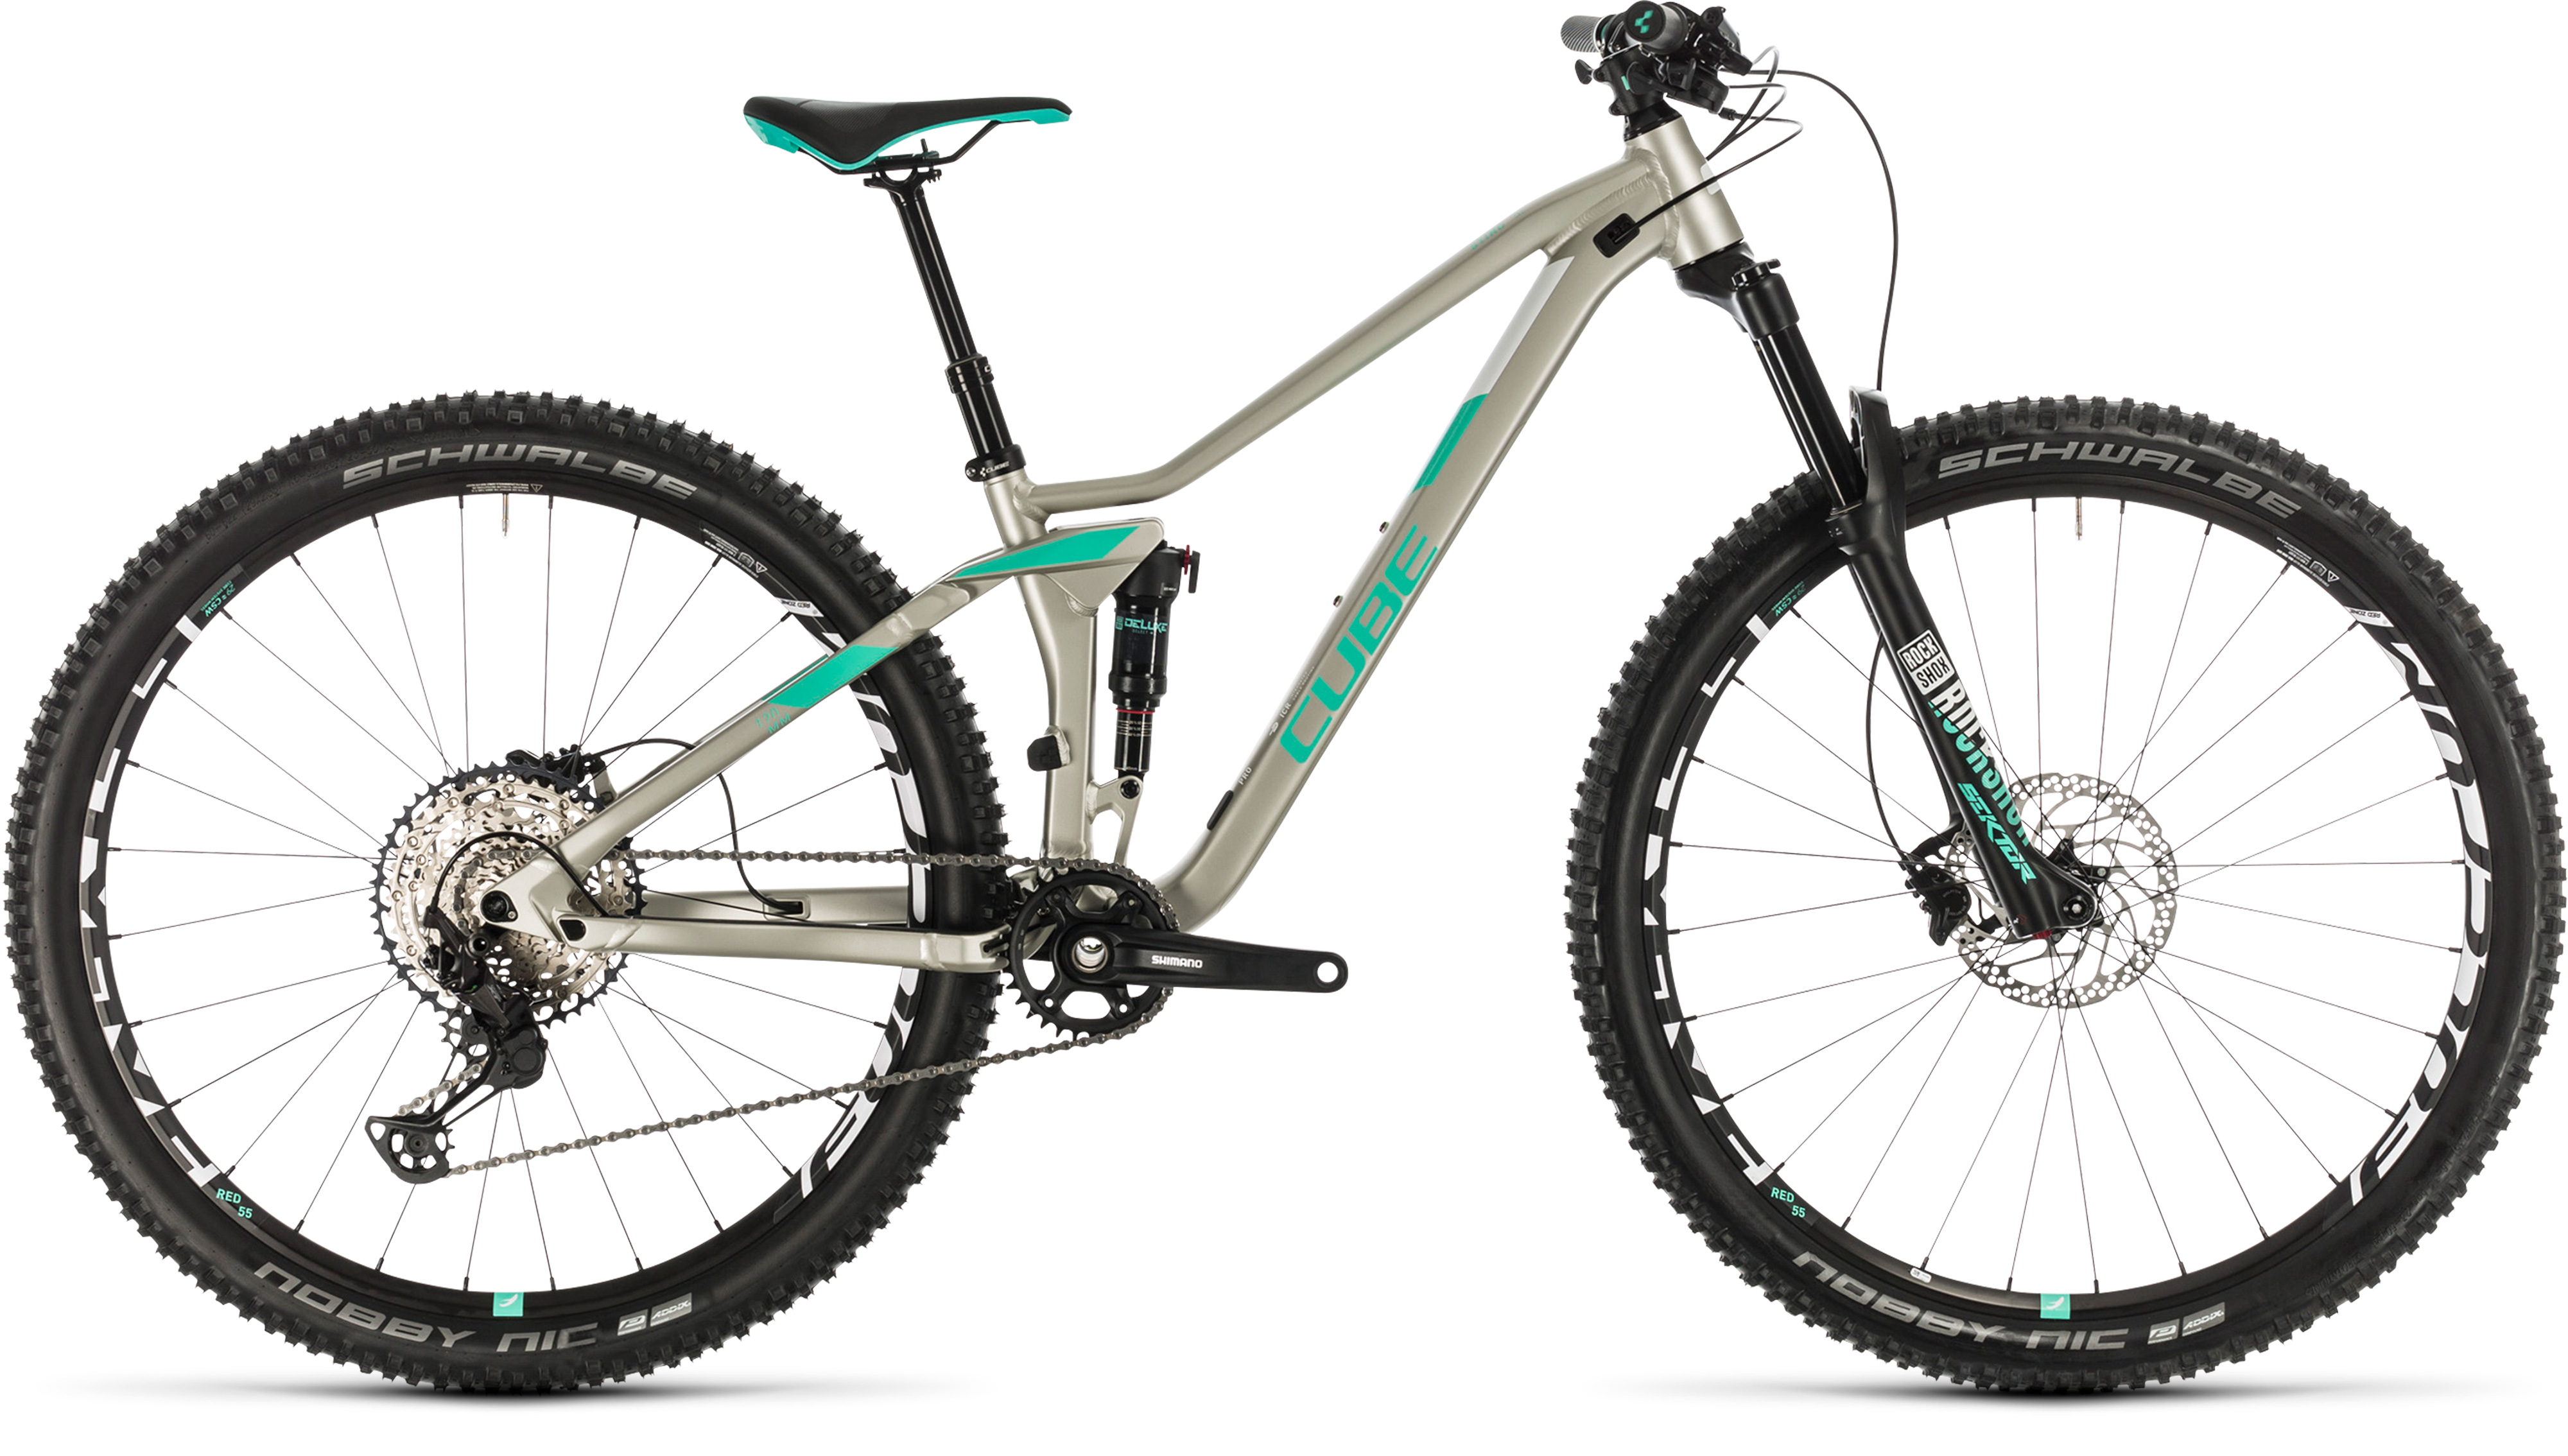  Отзывы о Двухподвесном велосипеде Cube Sting WS 120 Pro 27.5 2020